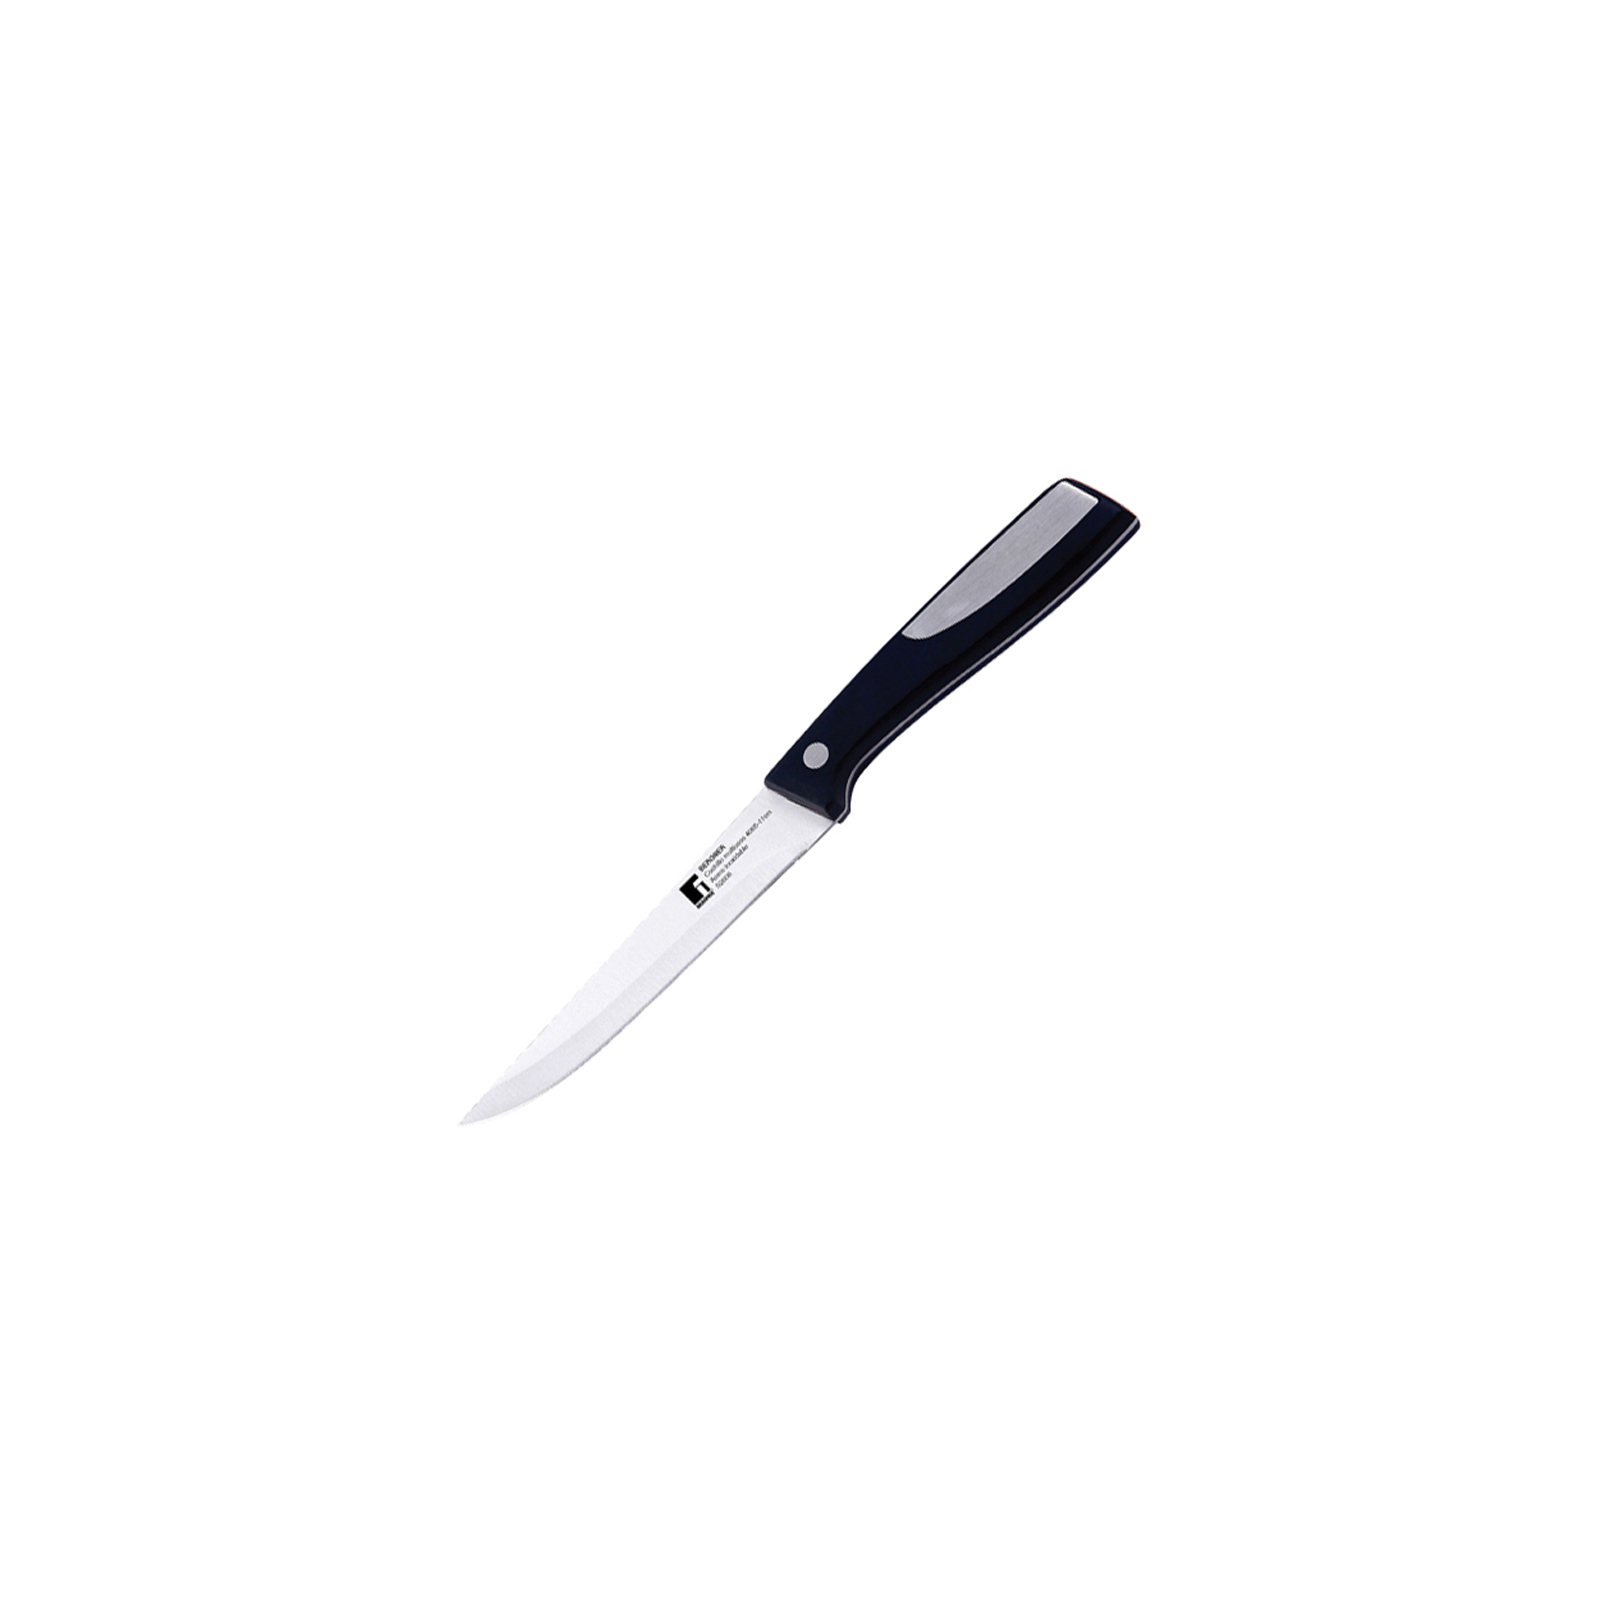 Кухонный нож Bergner Resa 20 см (BG-4062)